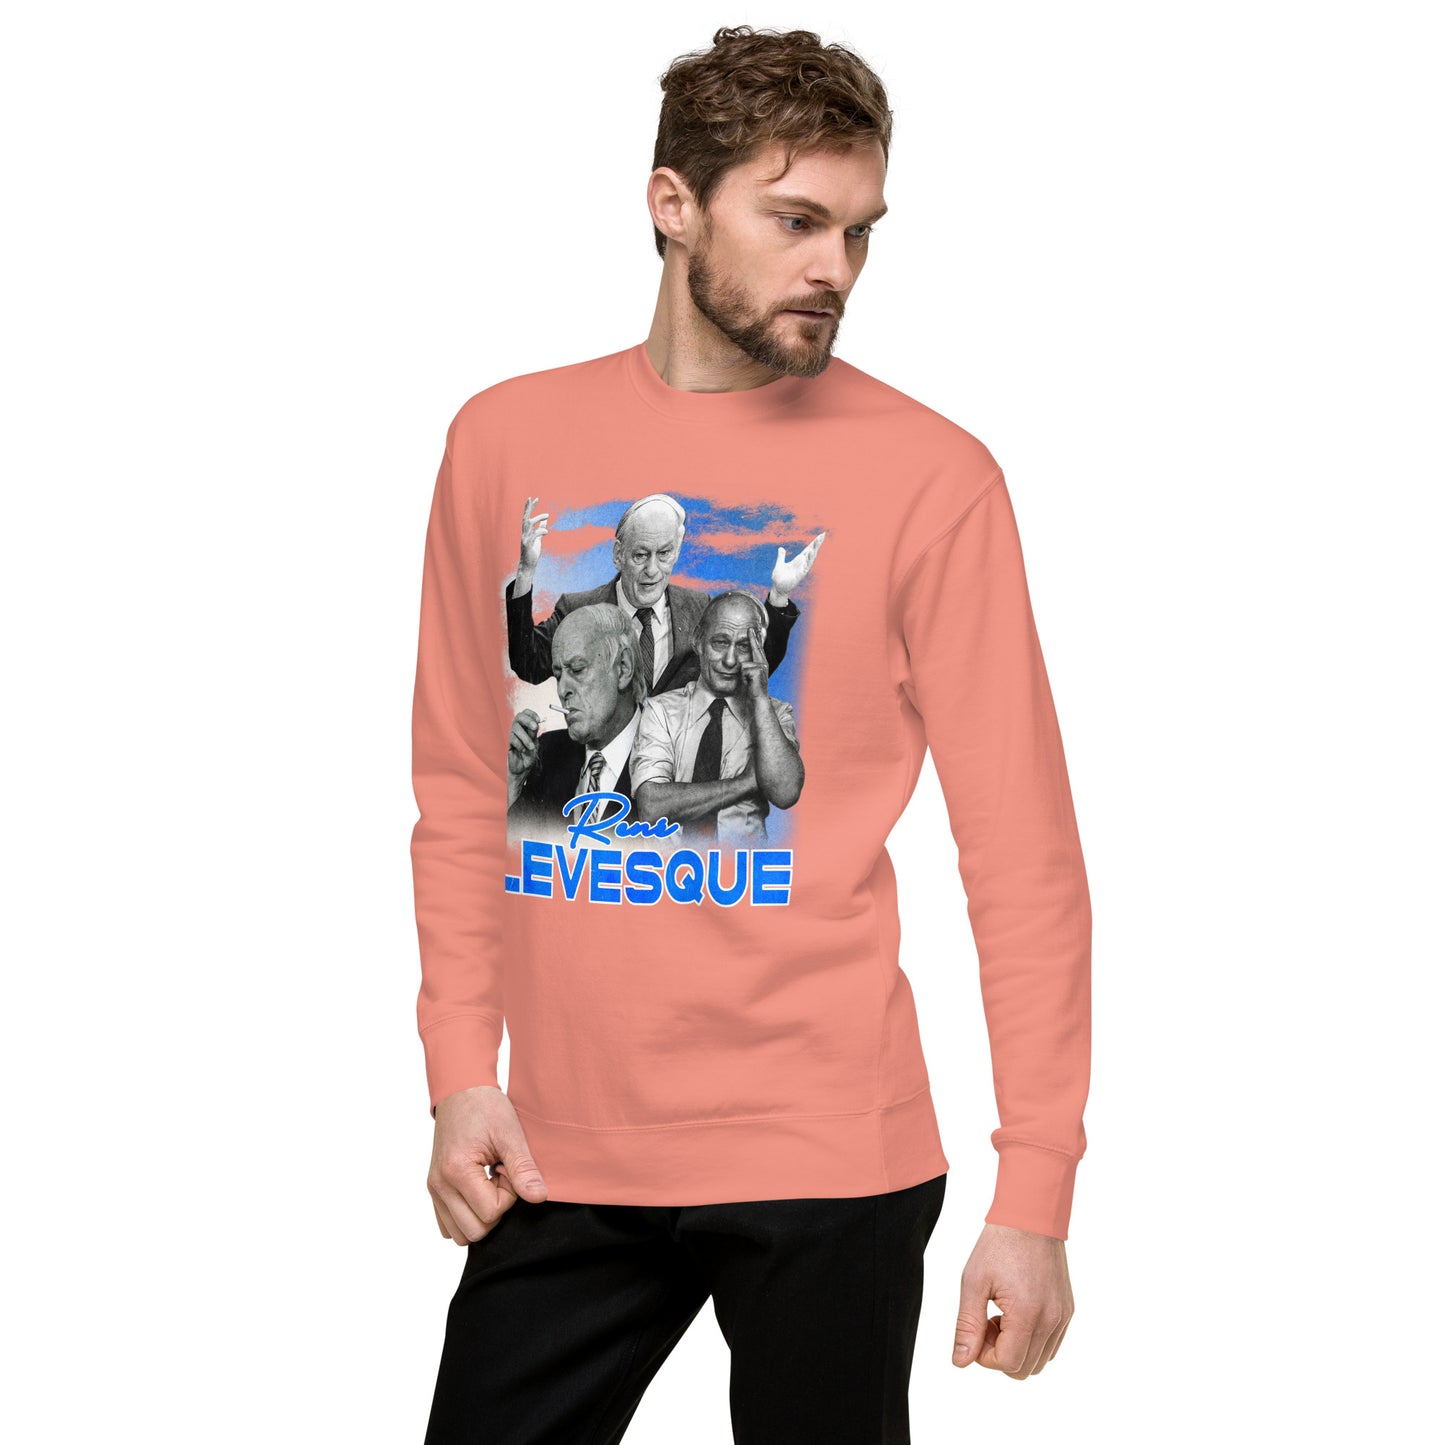 Sweatshirt premium unisexe - René Lévesque